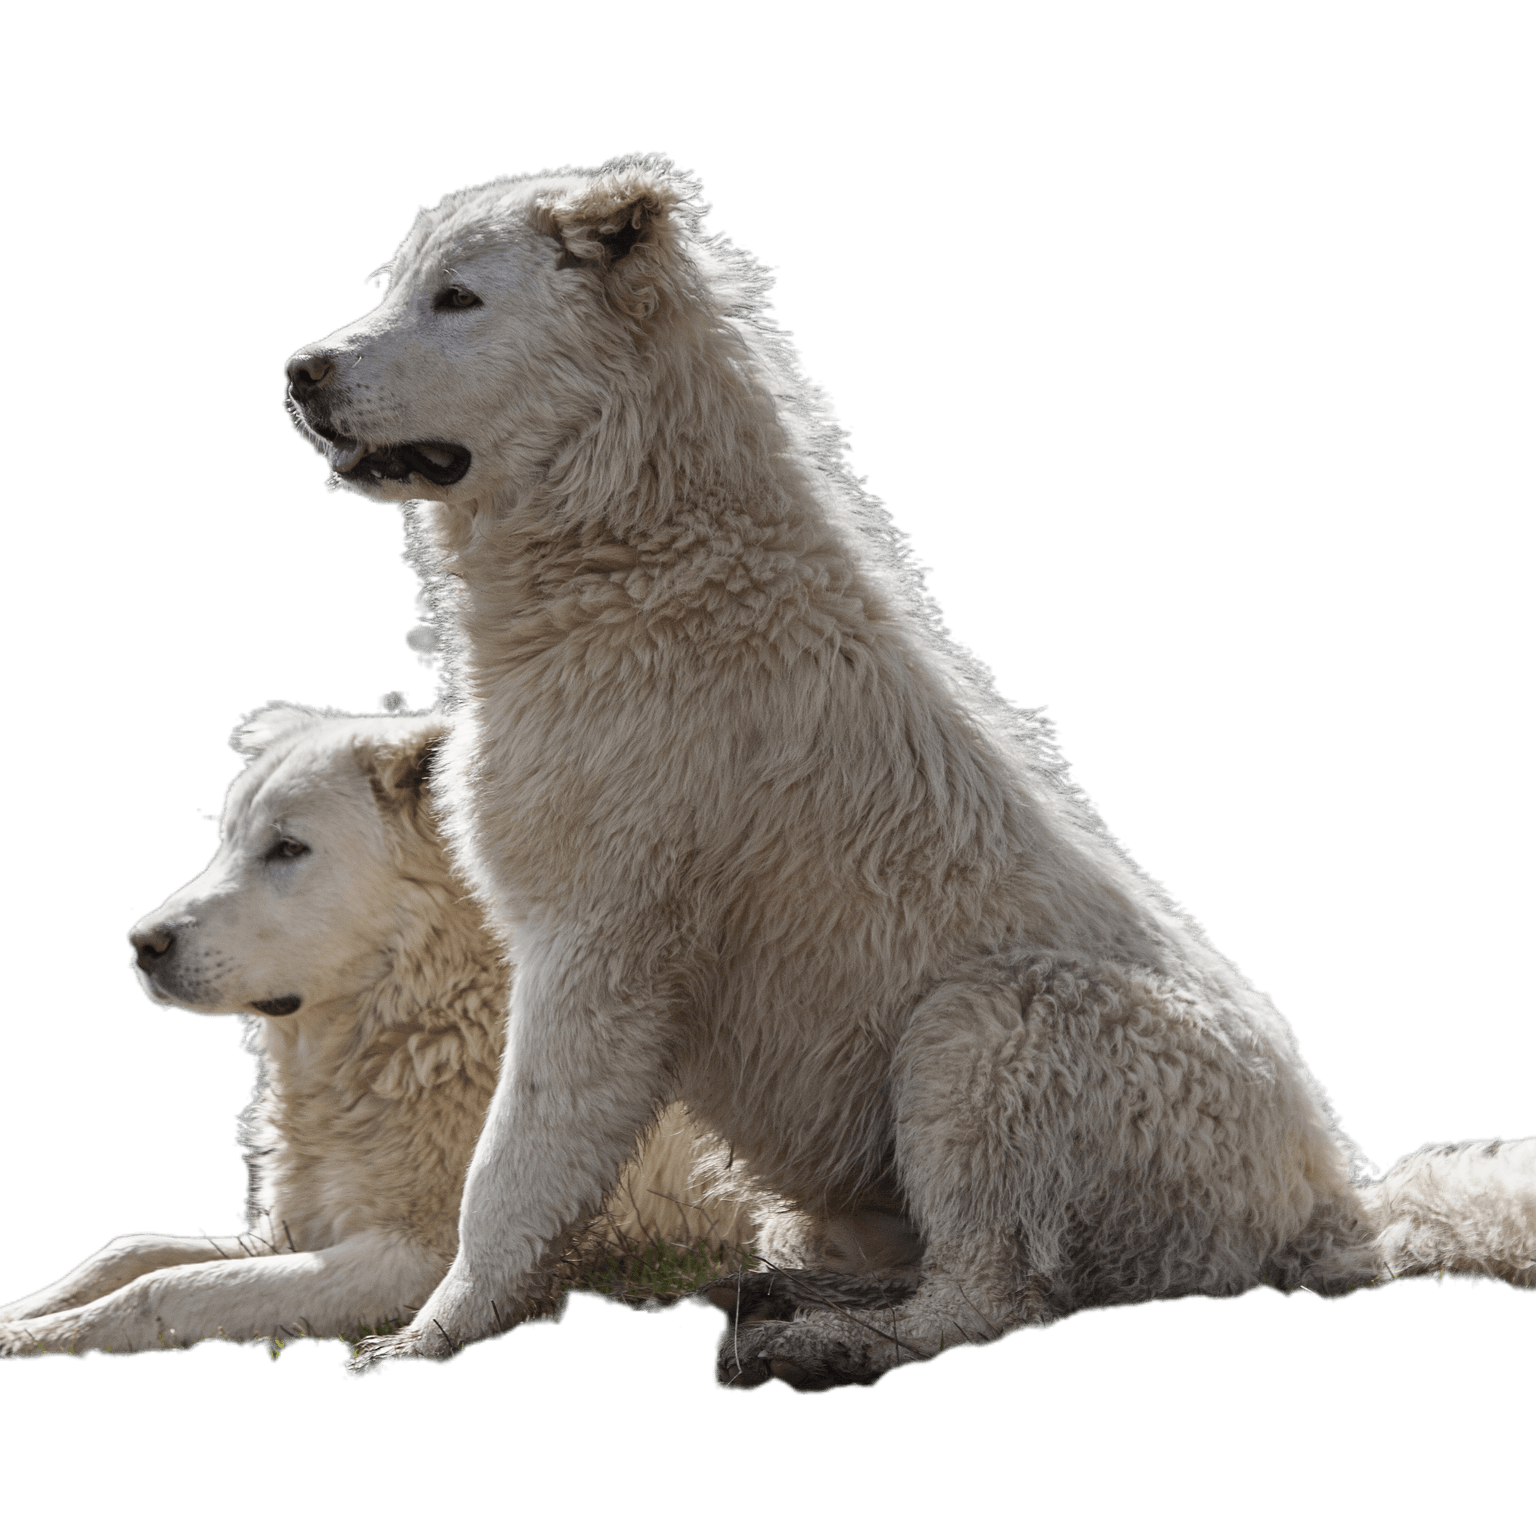 Maremmen-Abruzzen-Schäferhunde gemeinsam auf der Wiese